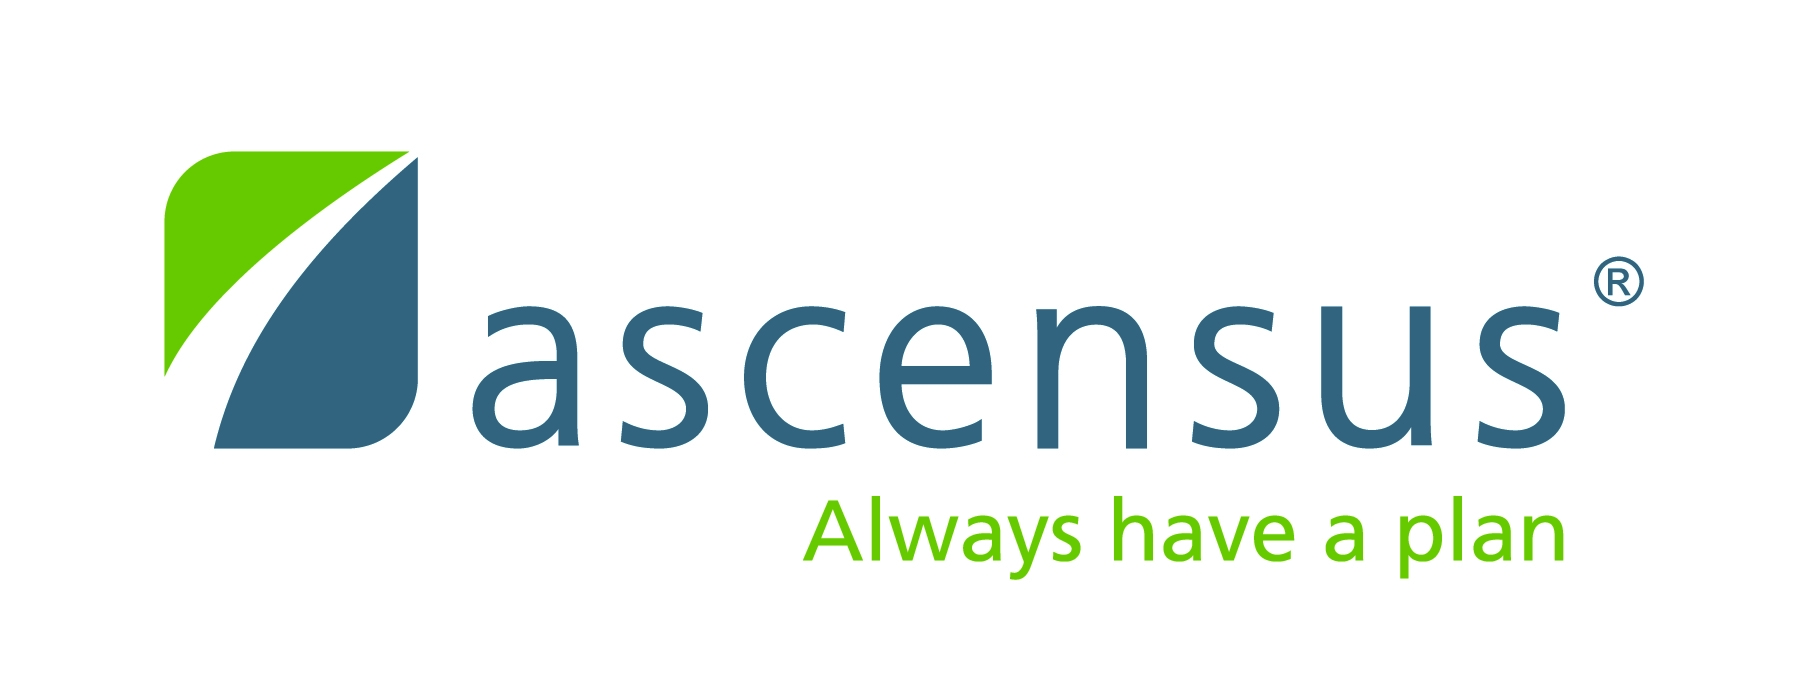 Ascensus, Inc. logo